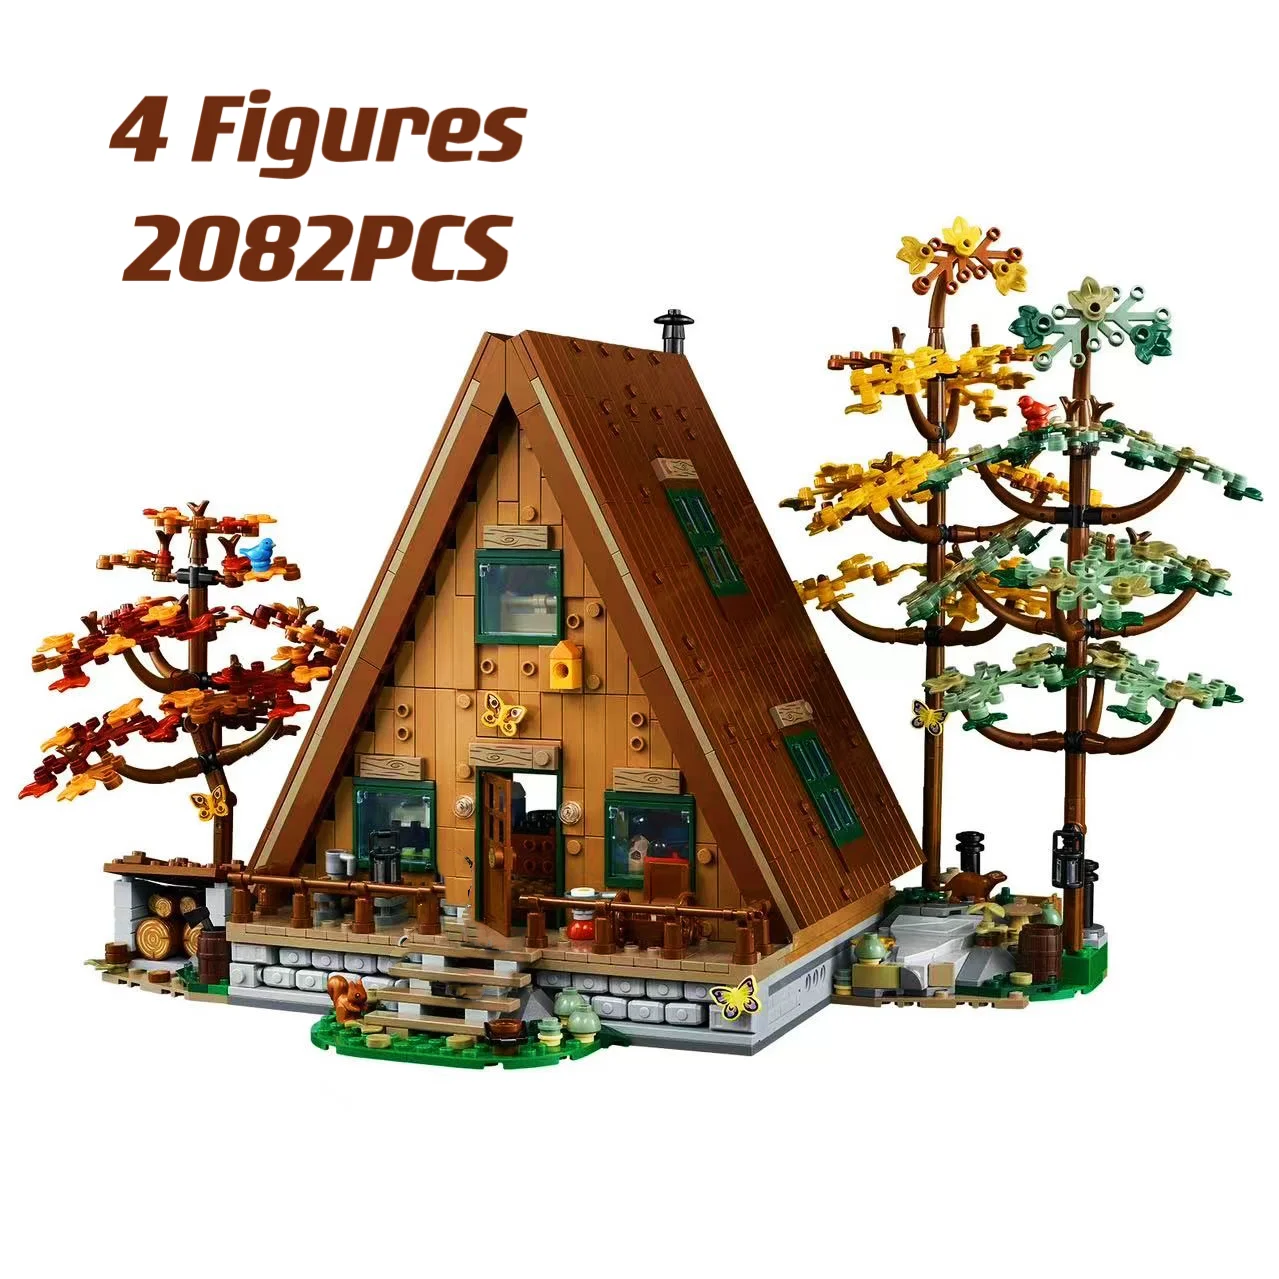 

Семейная рама типа A, коттедж 21338, уличная архитектура, 2082 шт., четыре сезона, лес, «сделай сам», деревянный домик, детские игрушки, строительные игрушки